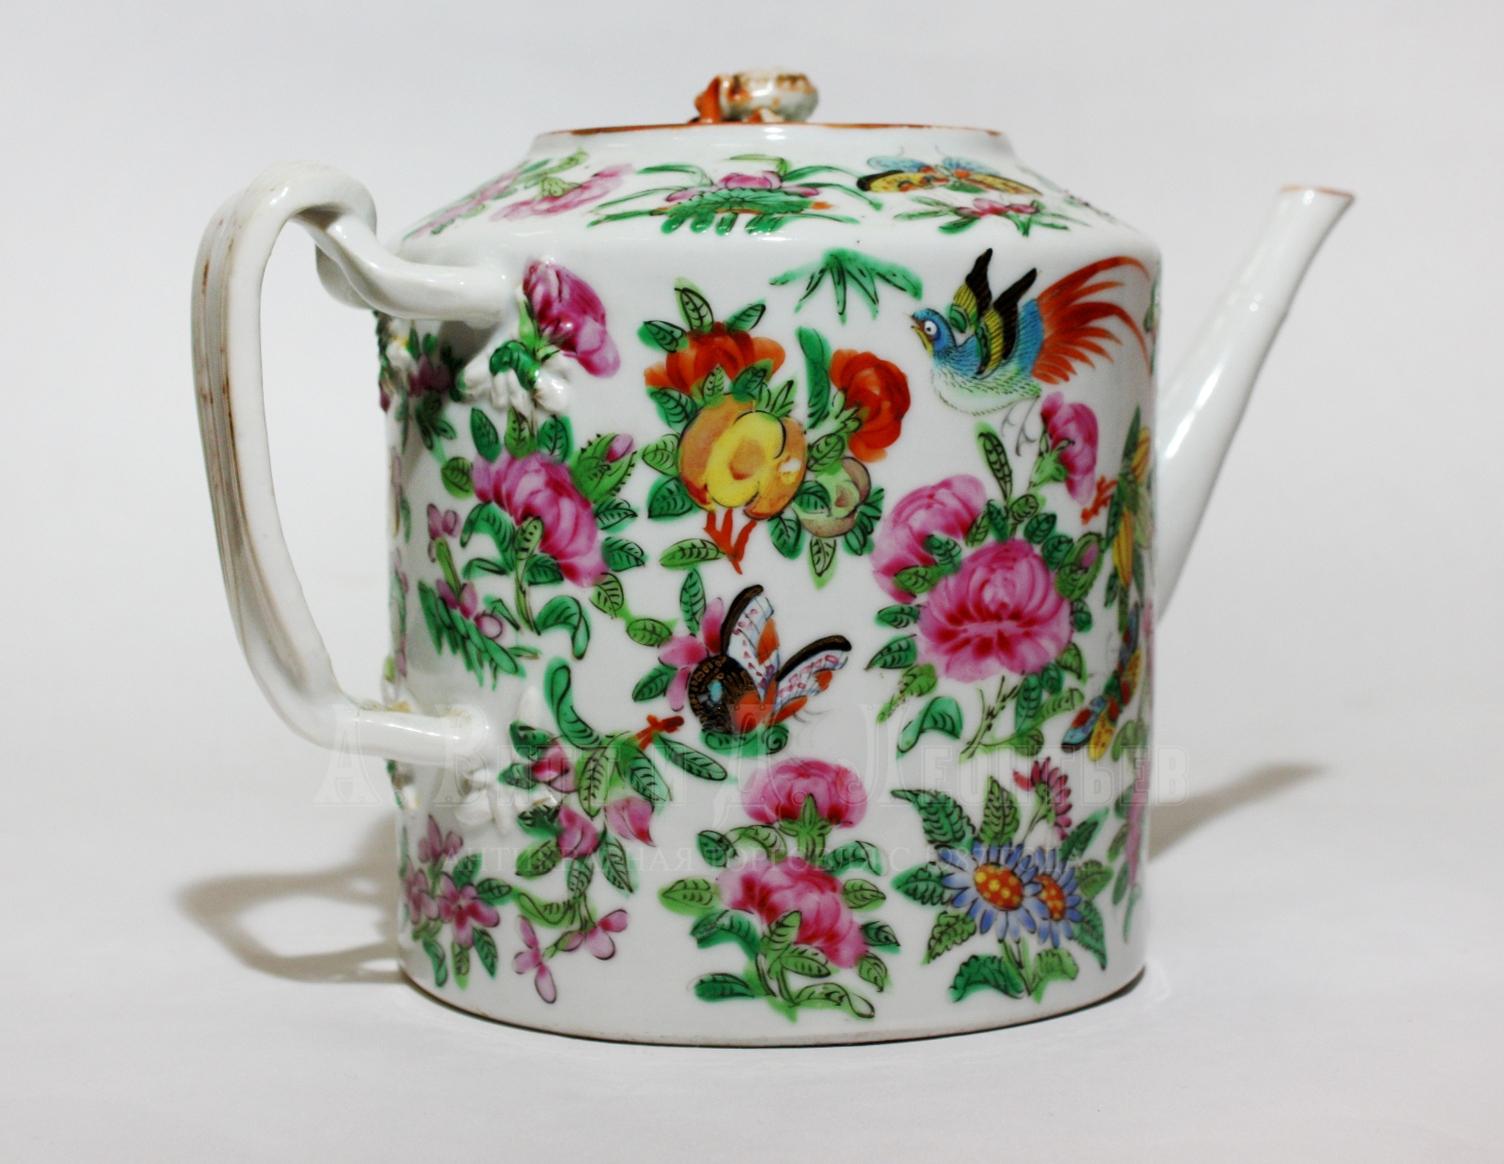 Антикварный китайский фарфоровый чайник 19 века